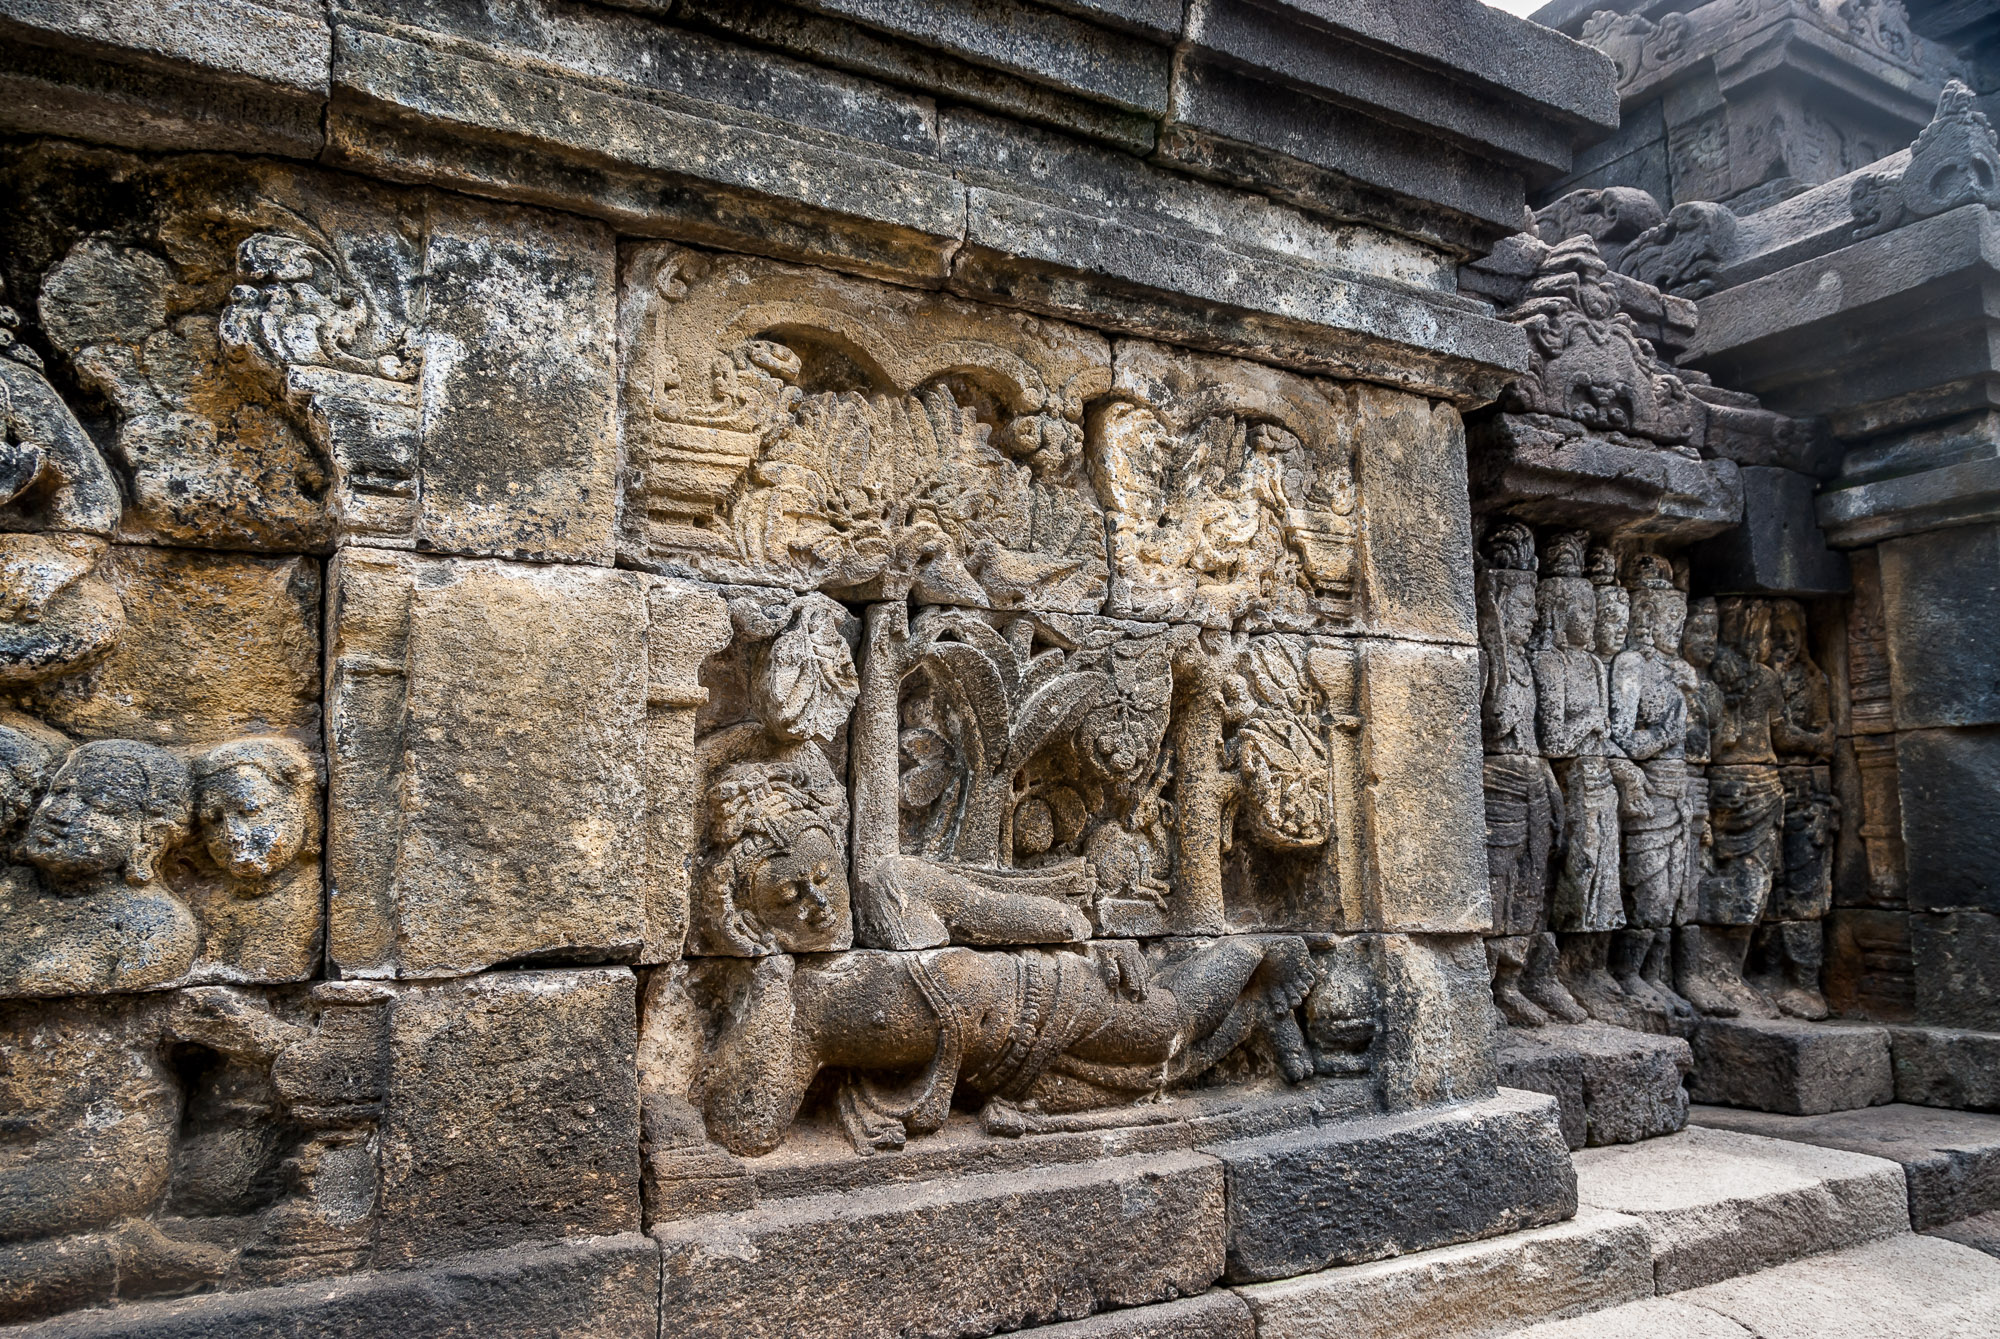 Borobudur relief panel